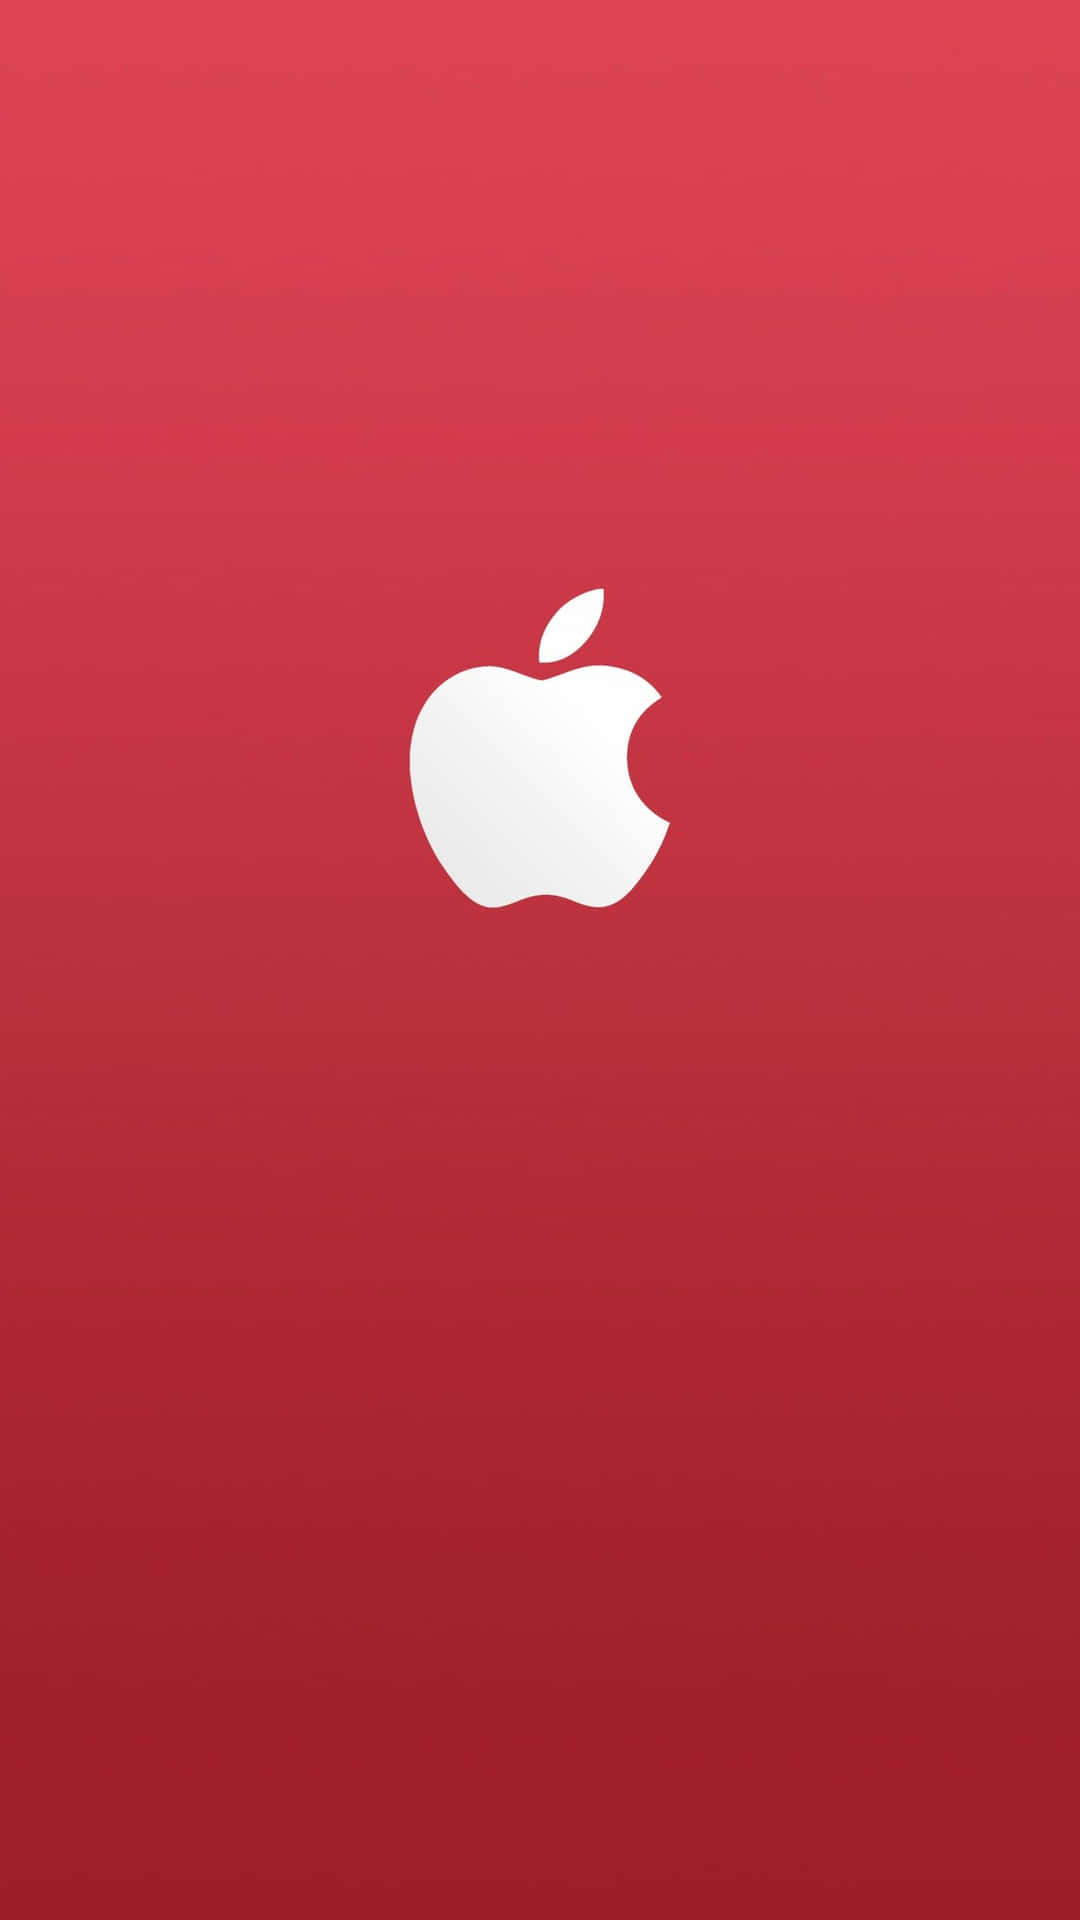 Applelogotypen På Baksidan Av Iphone X. Wallpaper